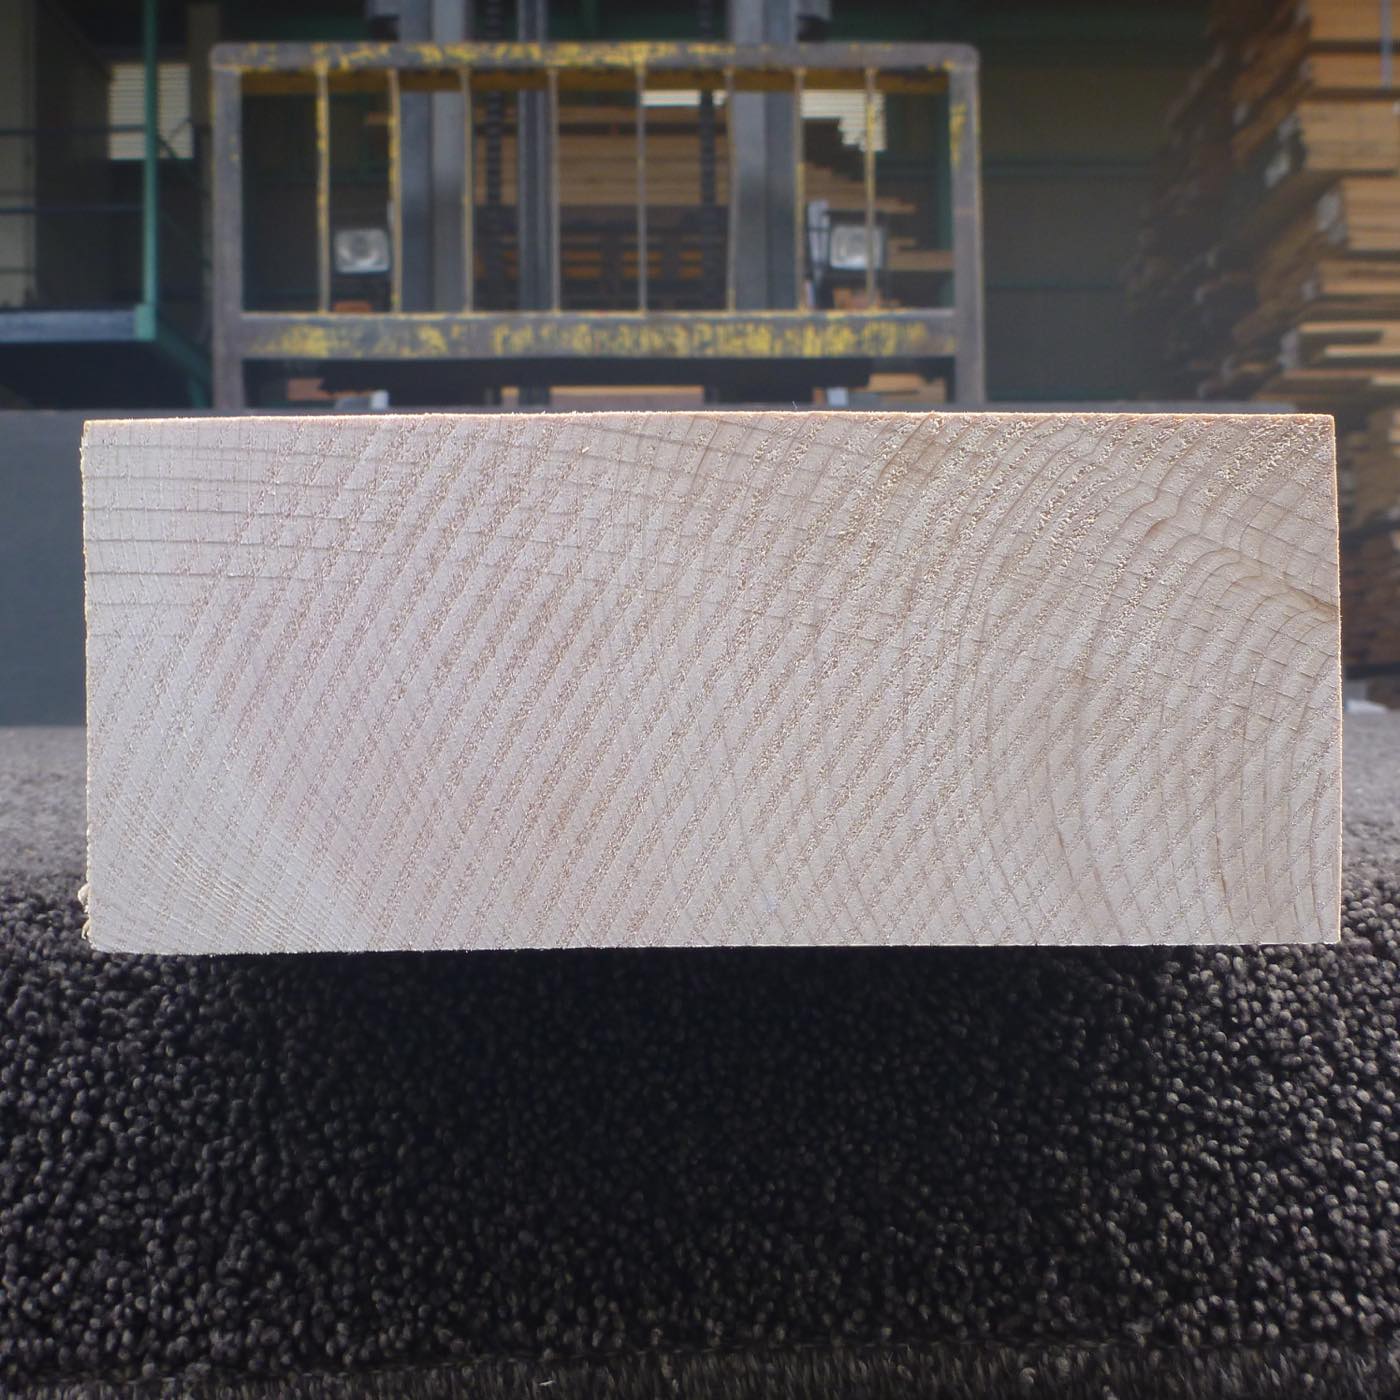 彫刻材 天然木曽檜 柾目盤 ラフ材 L600×T73×W174mm 2B073174 Bグレード 定番商品